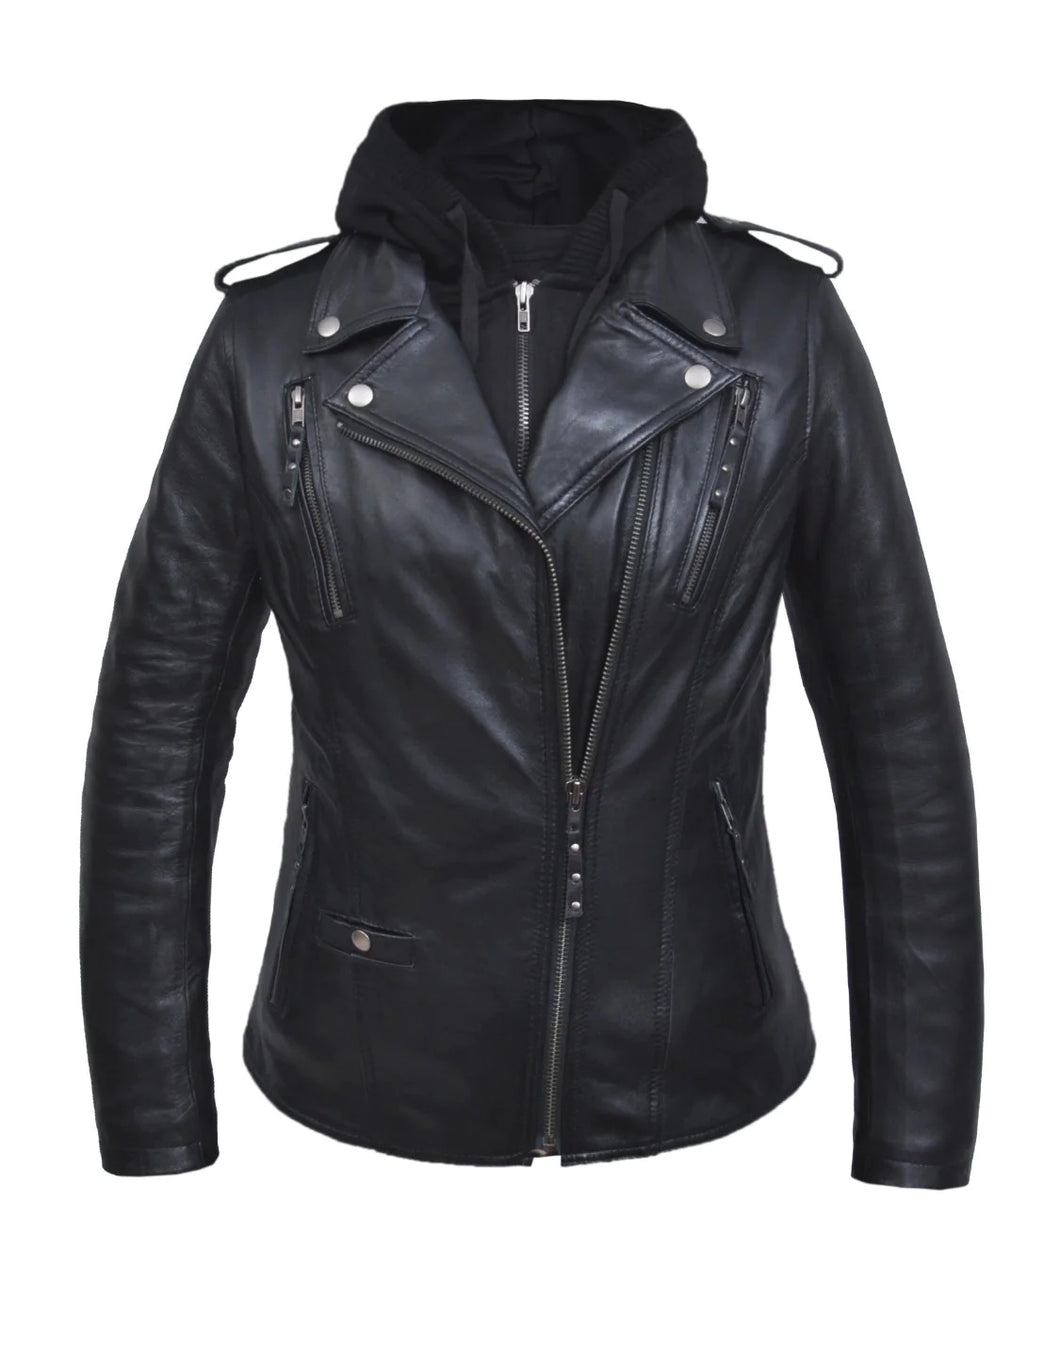 'Unik' Women's 3 in 1 Hoodie Lambskin Leather Jacket - Black